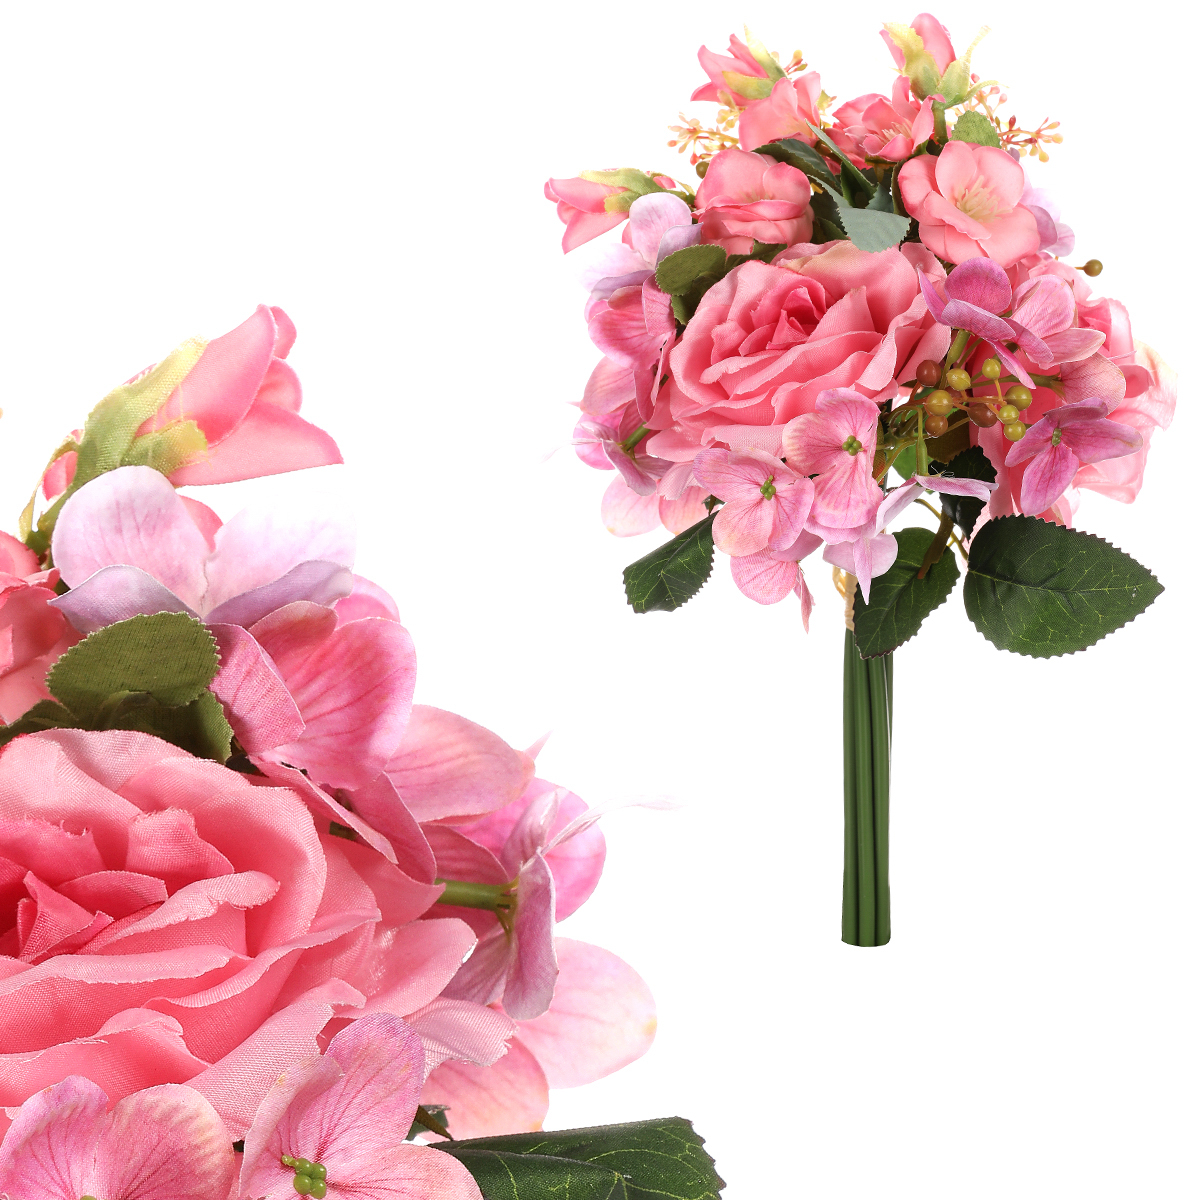 Puget květin, mix růží a hortenzie. Růžová barva.